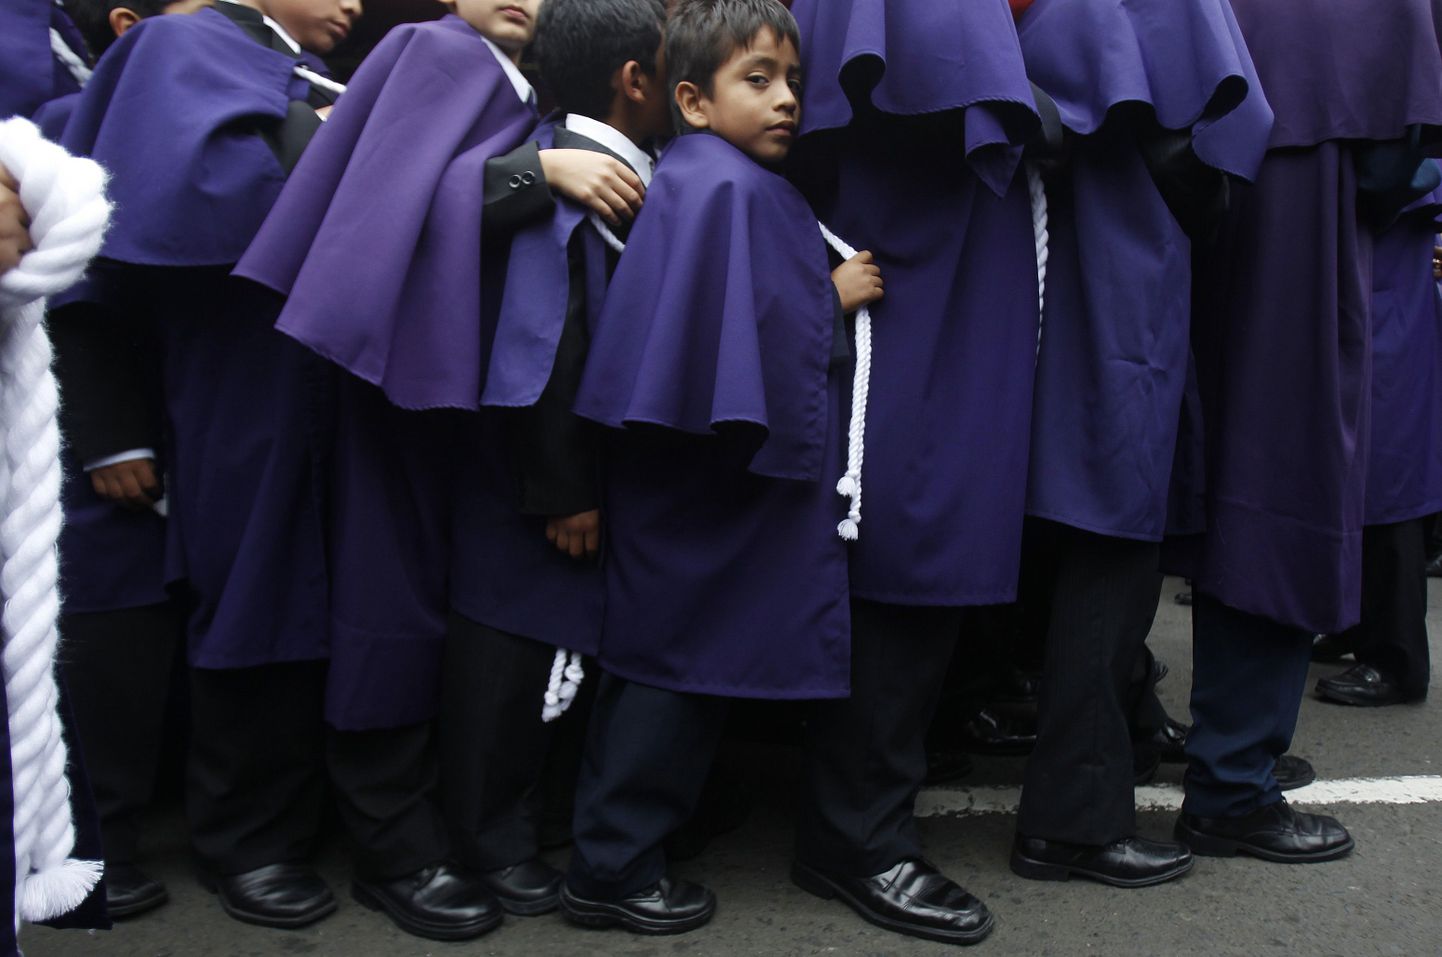 Peruu katoliku kooli õpilased.